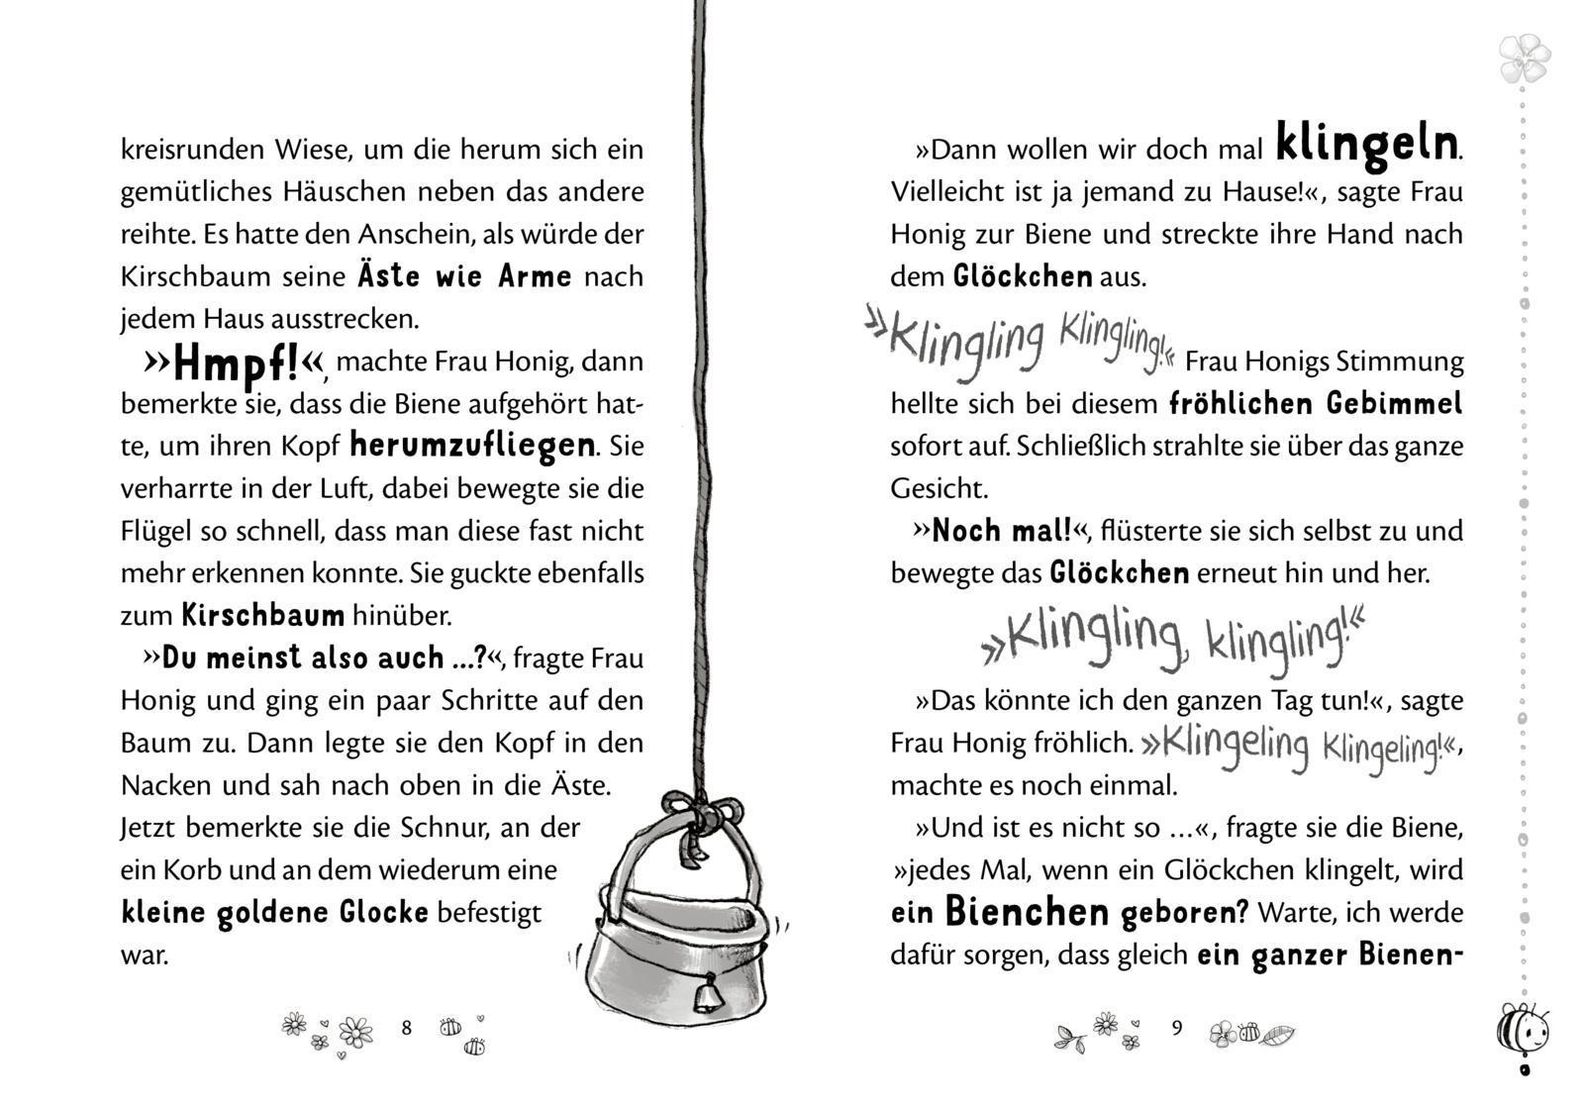 100 Dinge, die ihr als Familie zu Hause tun könnt (eBook, ePUB) von  Parents@Home - Portofrei bei bücher.de